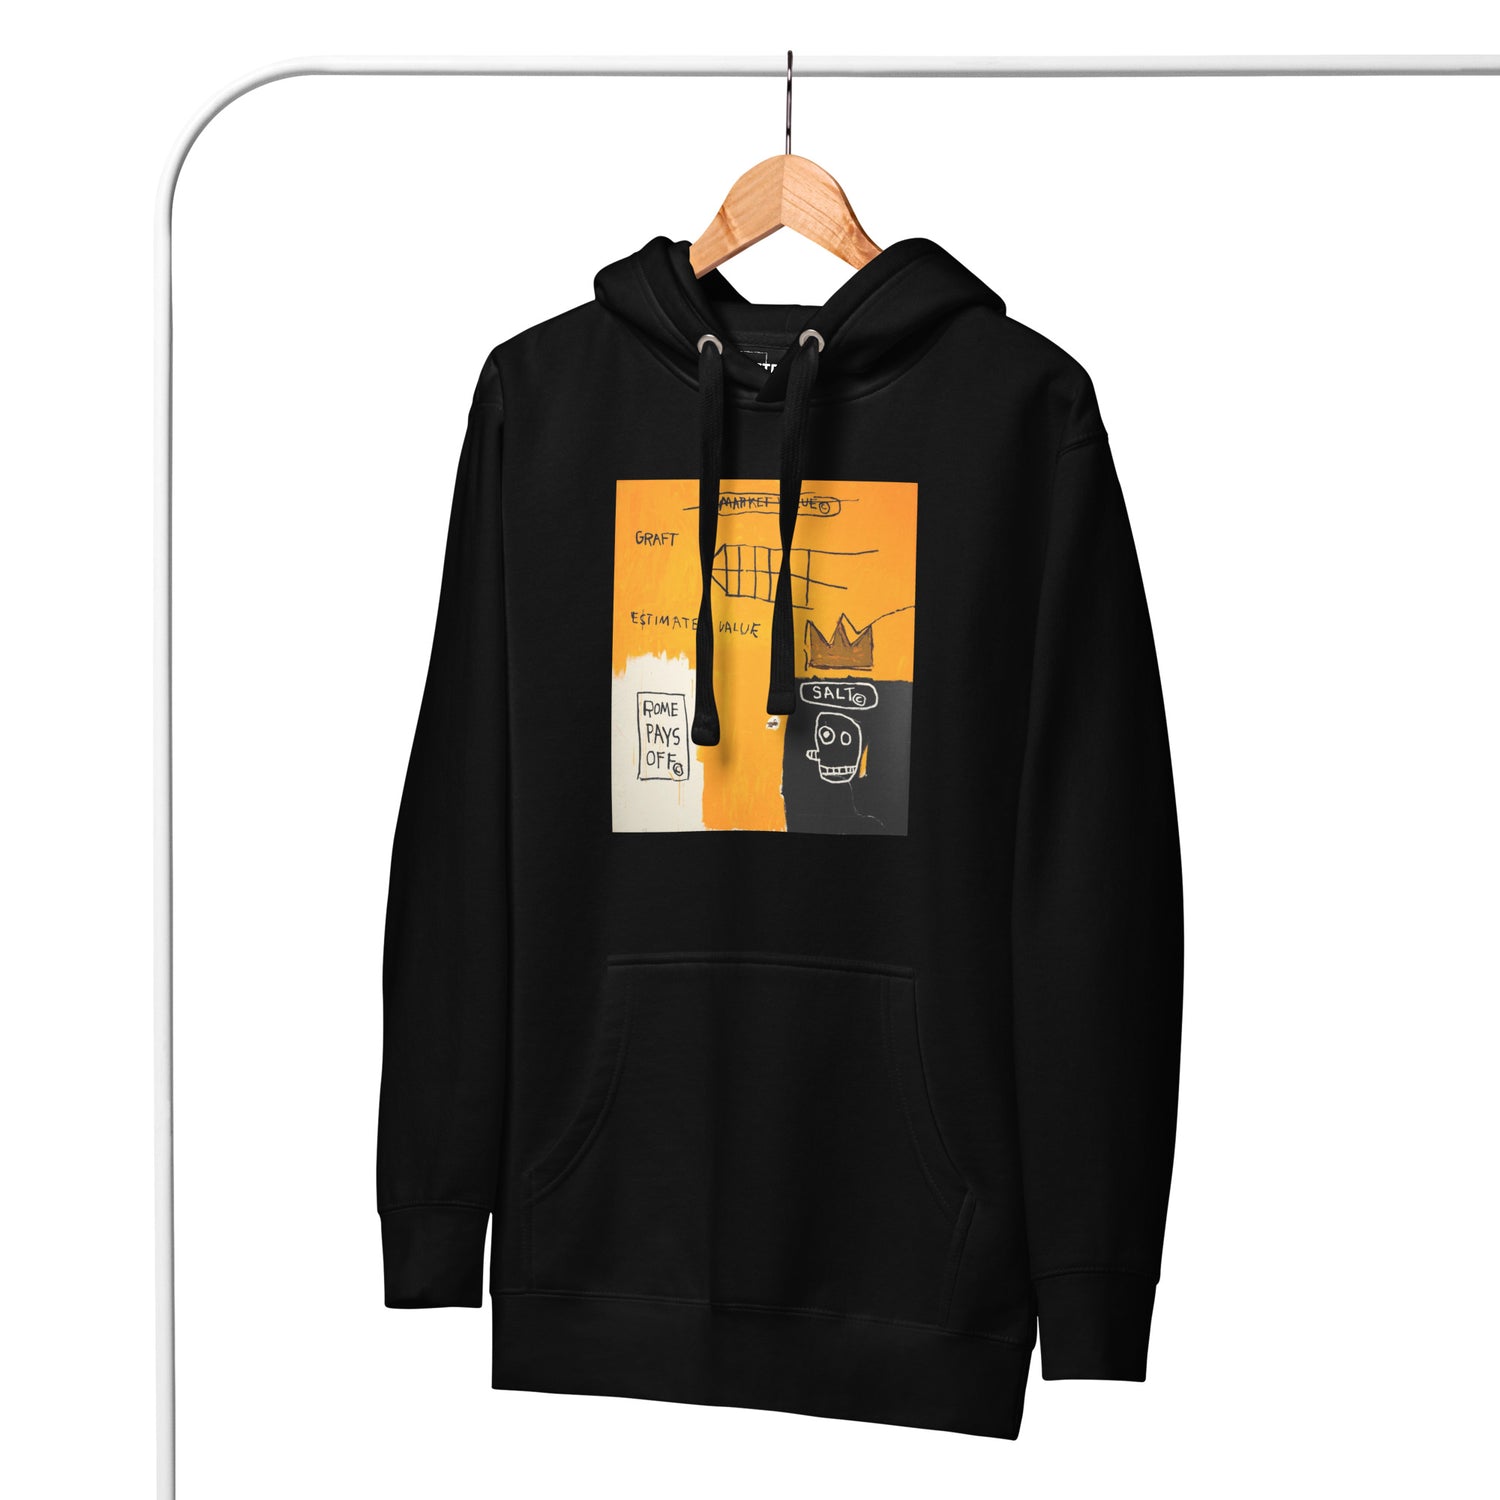 Jean-Michel Basquiat "Rome Pays Off" Artwork Printed Premium Streetwear Sweatshirt Hoodie Black